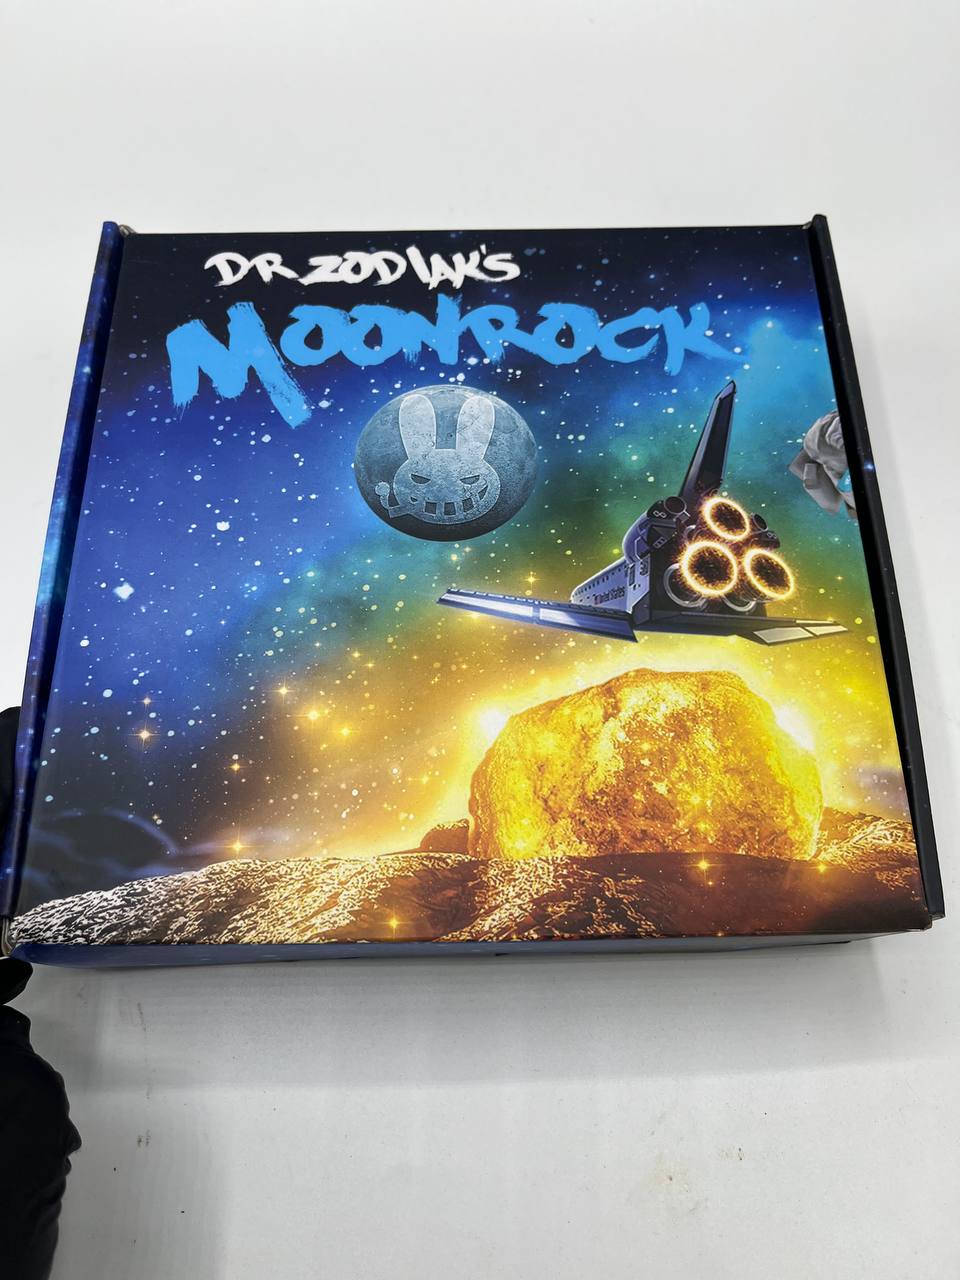 dr zodiak moonrock, dr zodiaks moonrock, dr zodiak's moonrock, where to buy dr zodiak moonrock